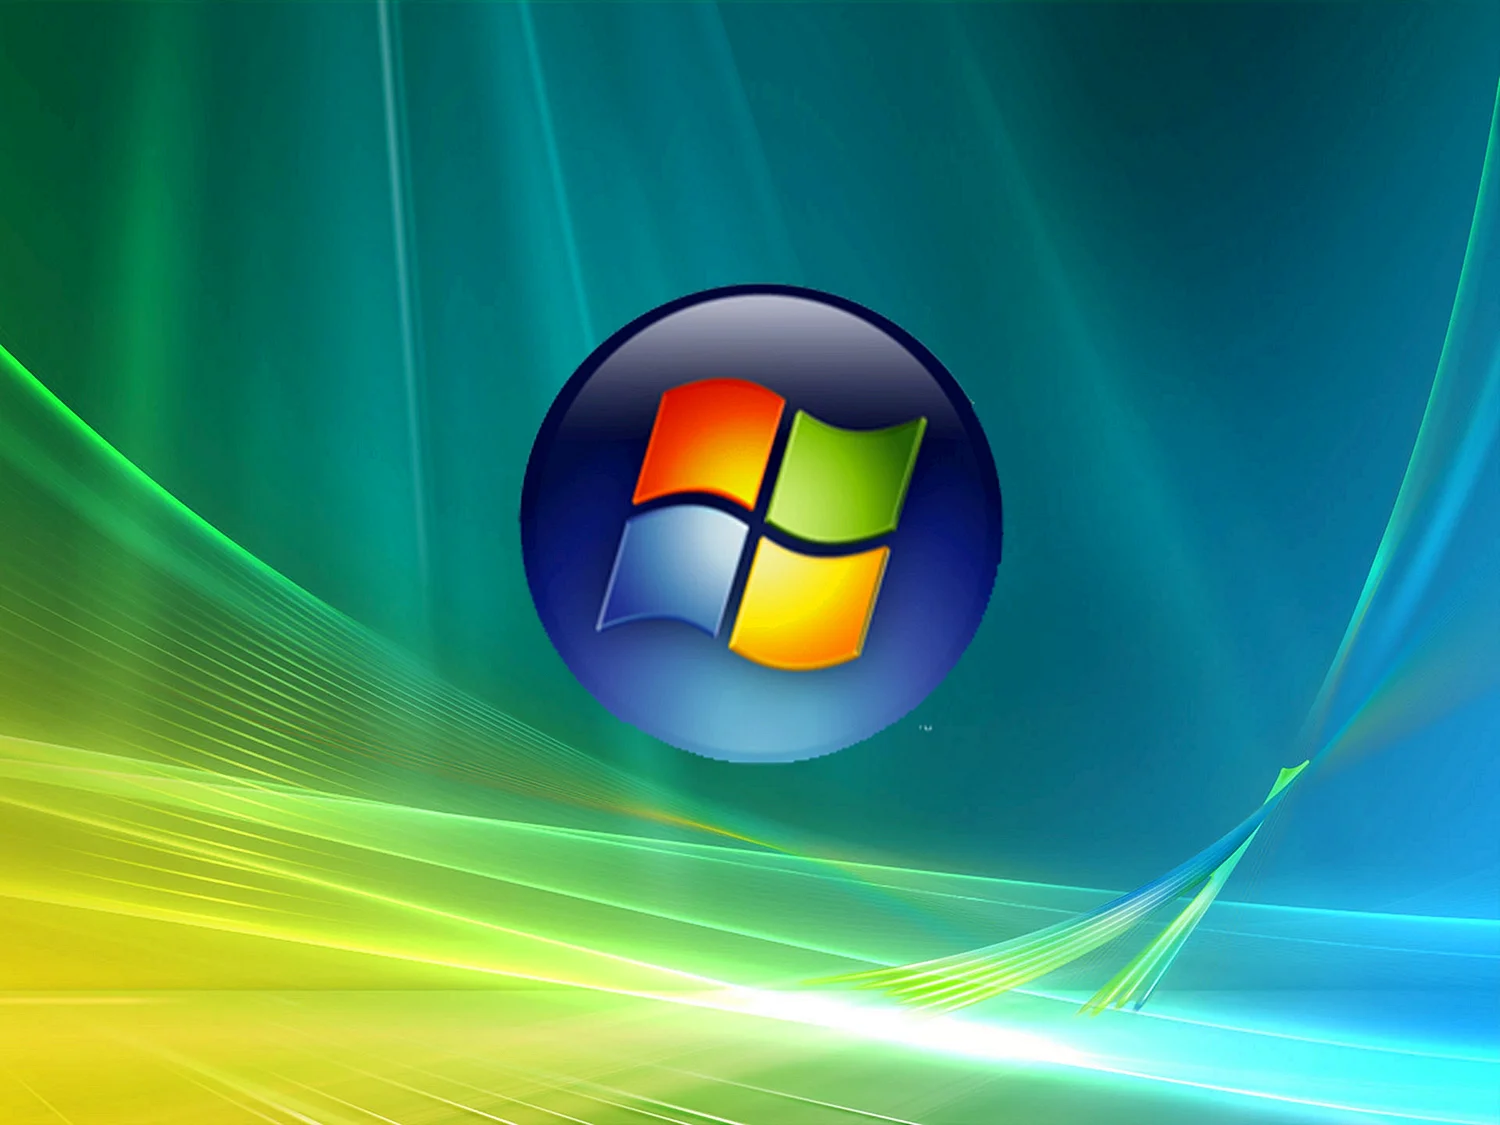 Операционная система Microsoft Windows